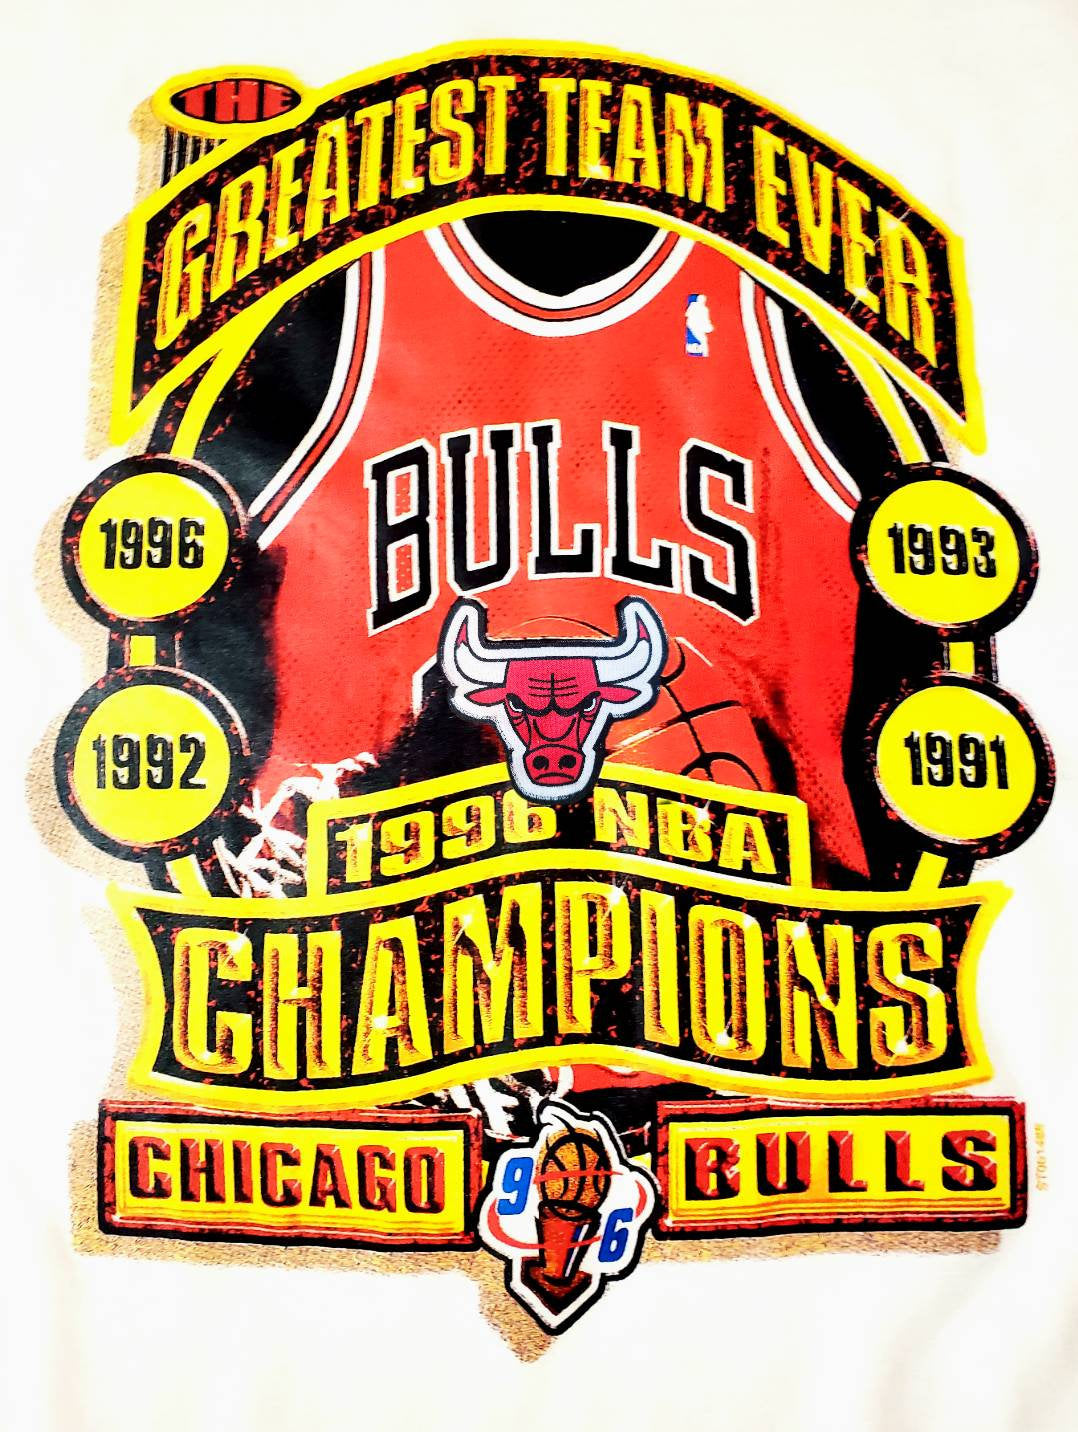 Vintage Chicago Bulls 1993 Champions Tshirt 